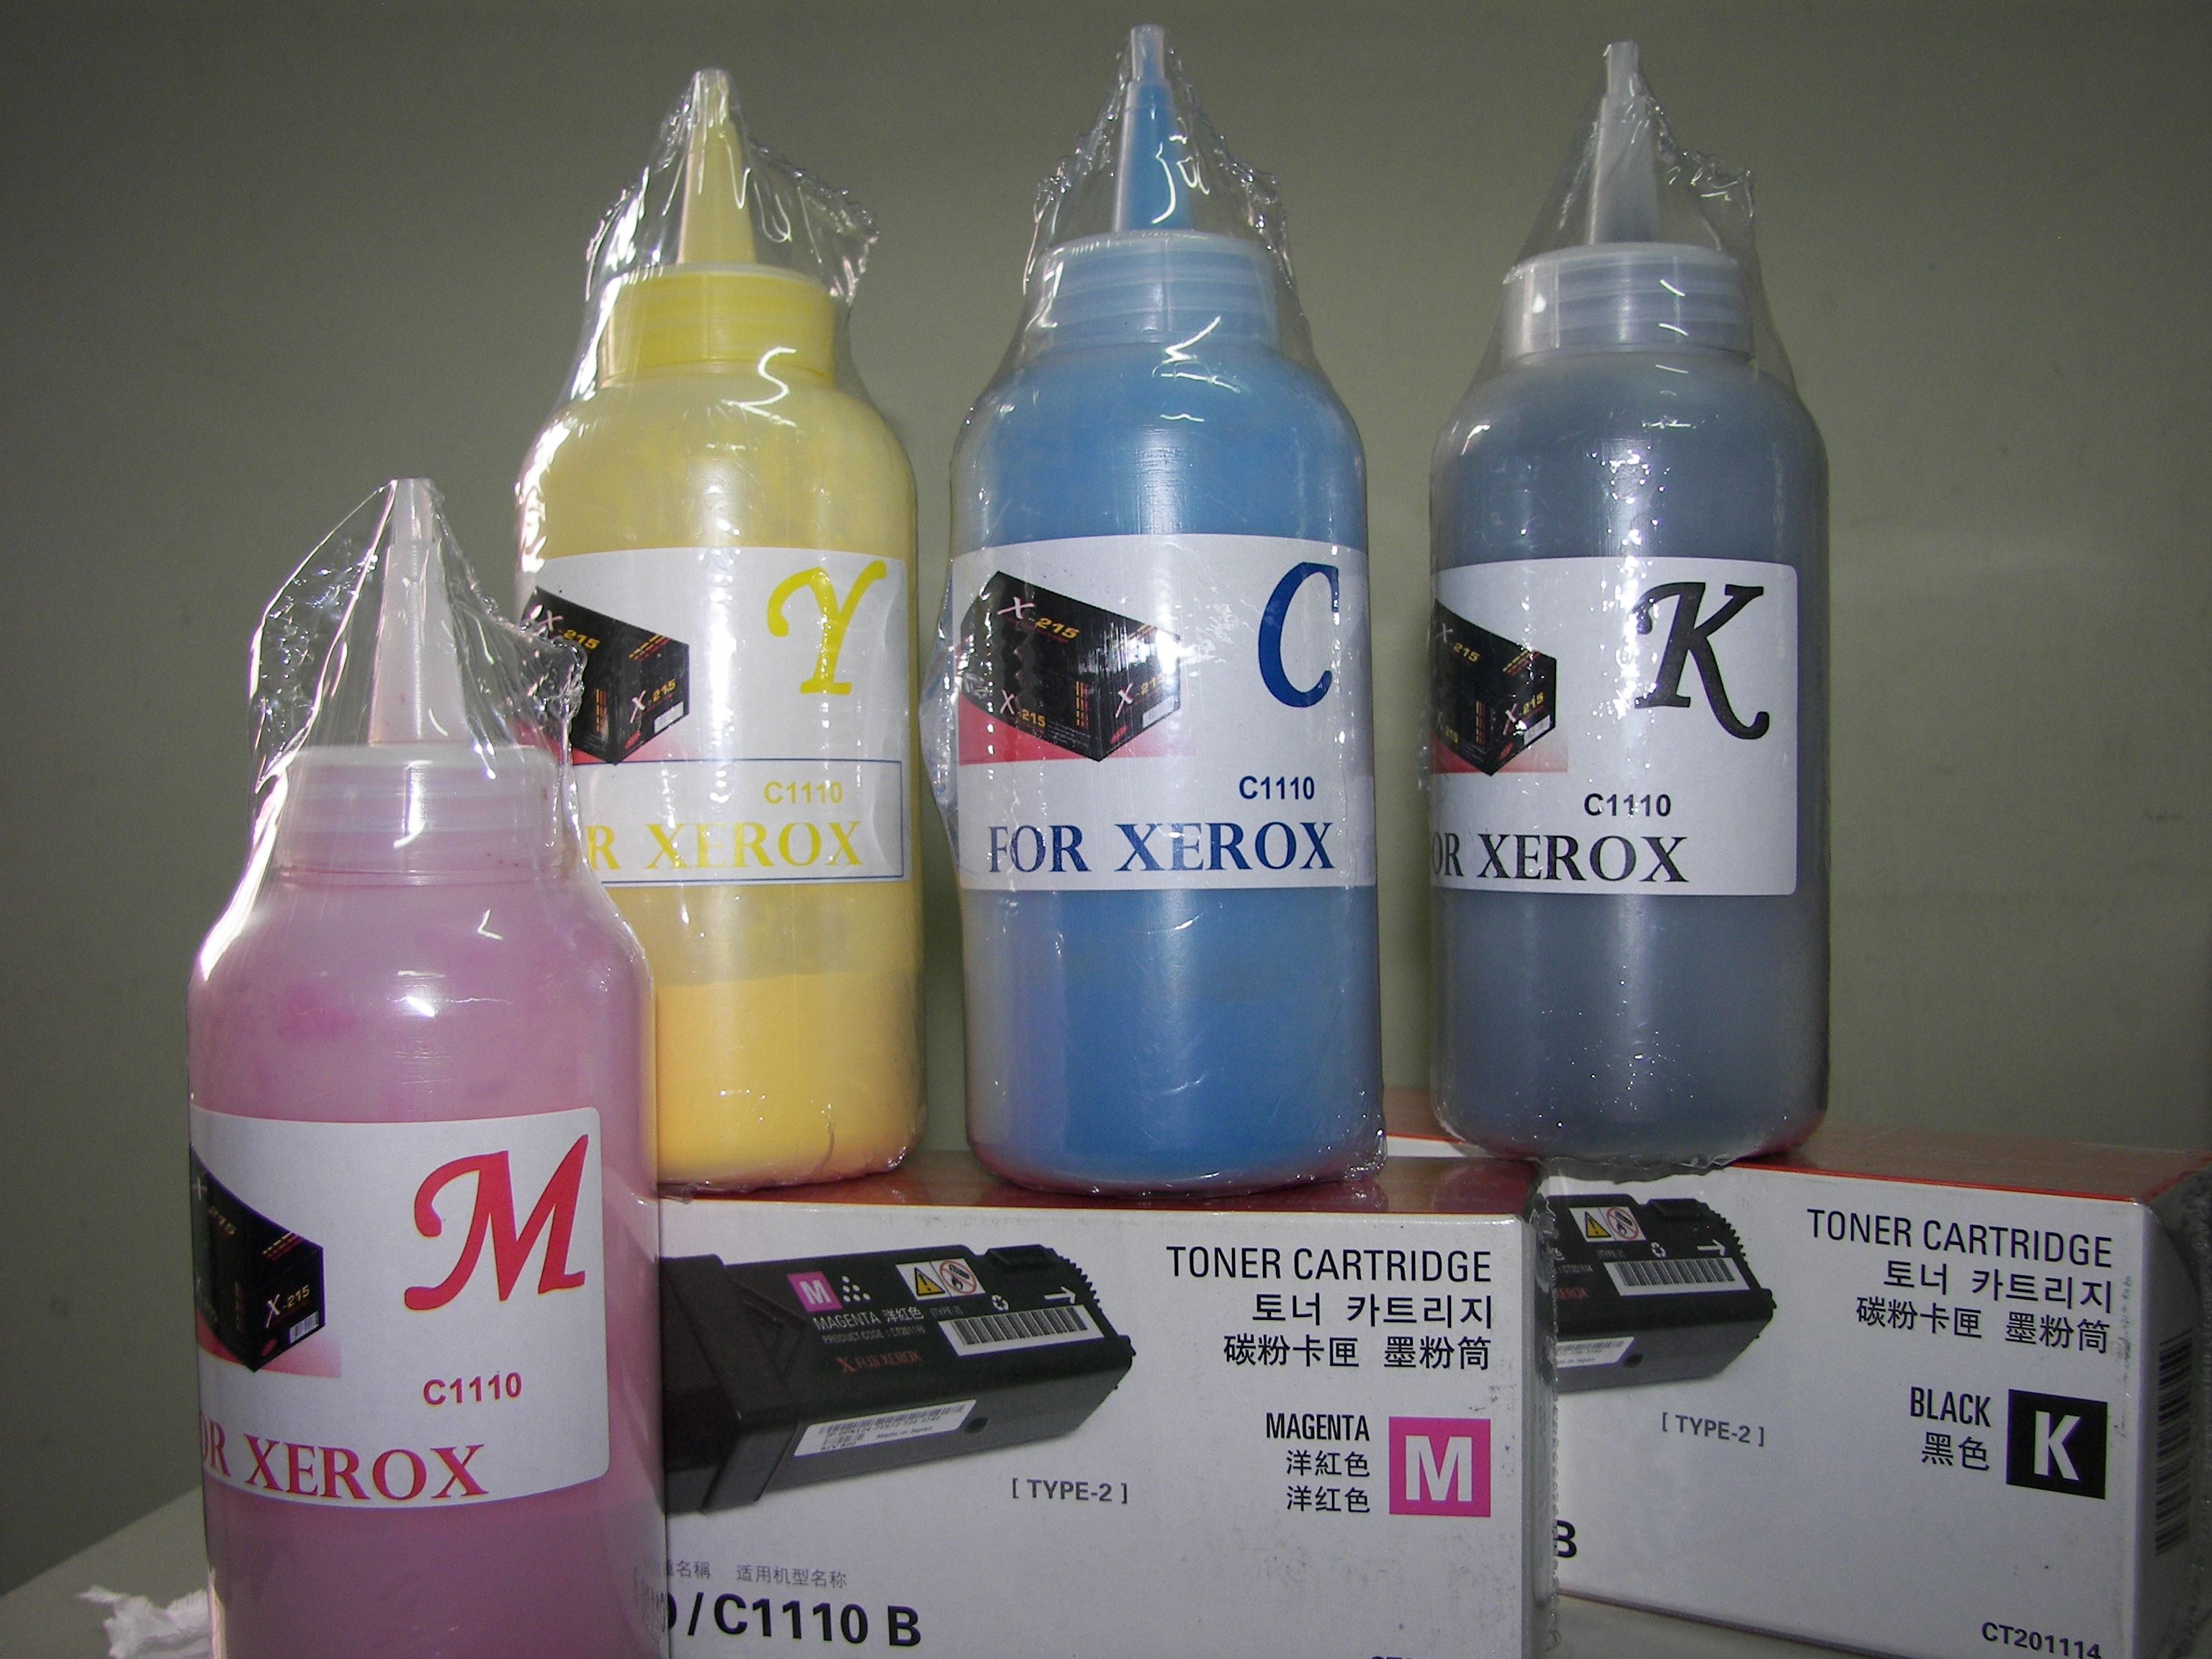 หมึกเติมคุณภาพสำหรับ  XEROX C1110 /C1110B  พร้อมชิพ สี MAGENTA